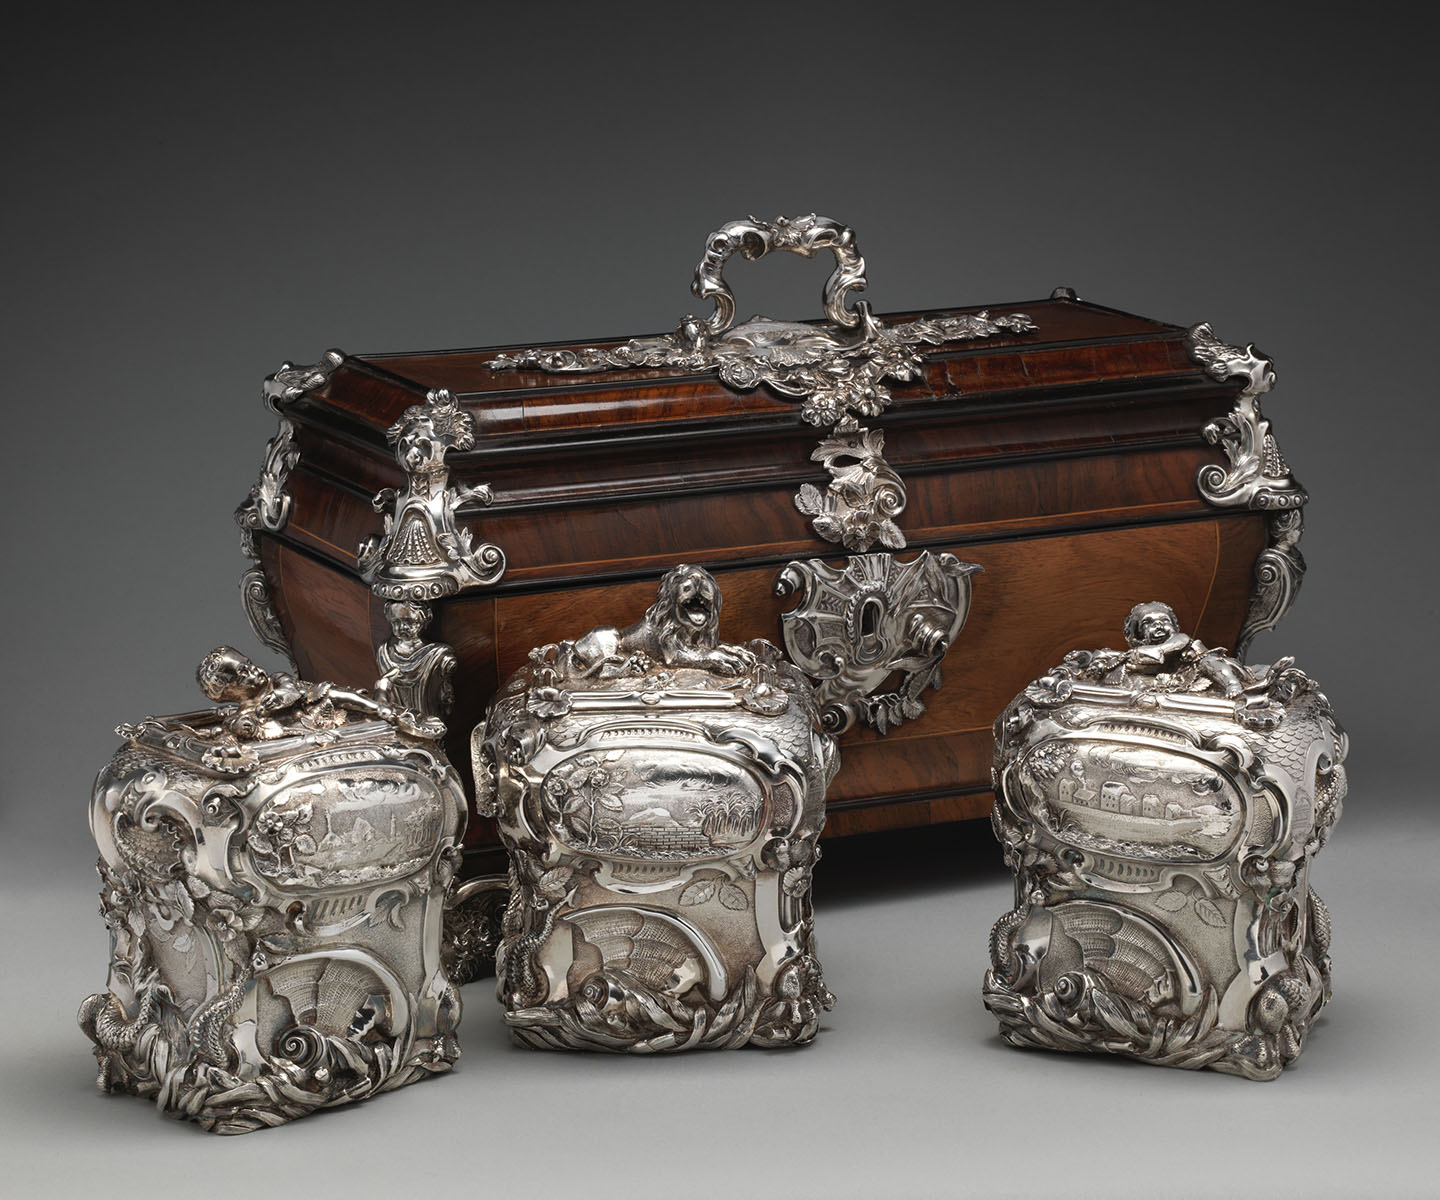 Một cặp hai hũ trà và một hũ đường trong một chiếc rương, nghệ nhân bạc Paul de Lamerie, năm 1738 và/hoặc năm 1739. Bạc; gỗ sồi, gỗ hồng (rosewood) khảm gỗ hoàng dương (boxwood) và gỗ mun (ebony), các khóa bằng bạc. Bảo tàng nghệ thuật Metropolitan, thành phố New York. (Ảnh: Tư liệu công cộng)